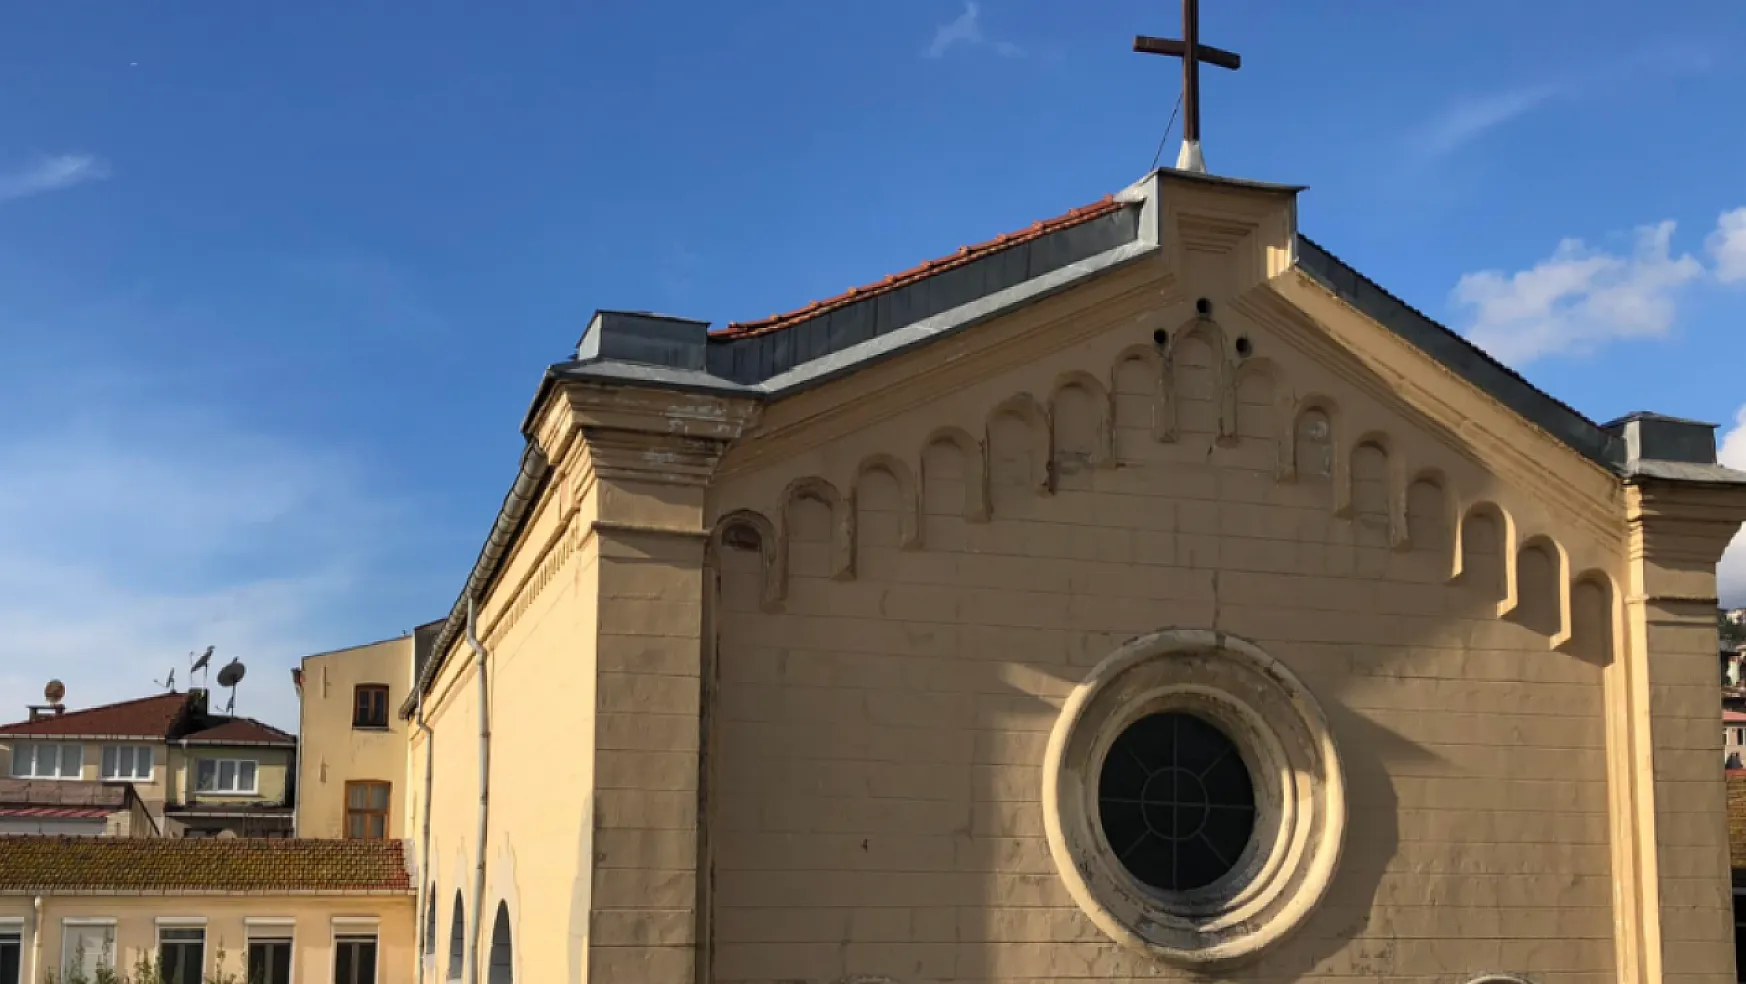 Kiliseye silahlı saldırı gerçekleşti! 1 kişi öldü!